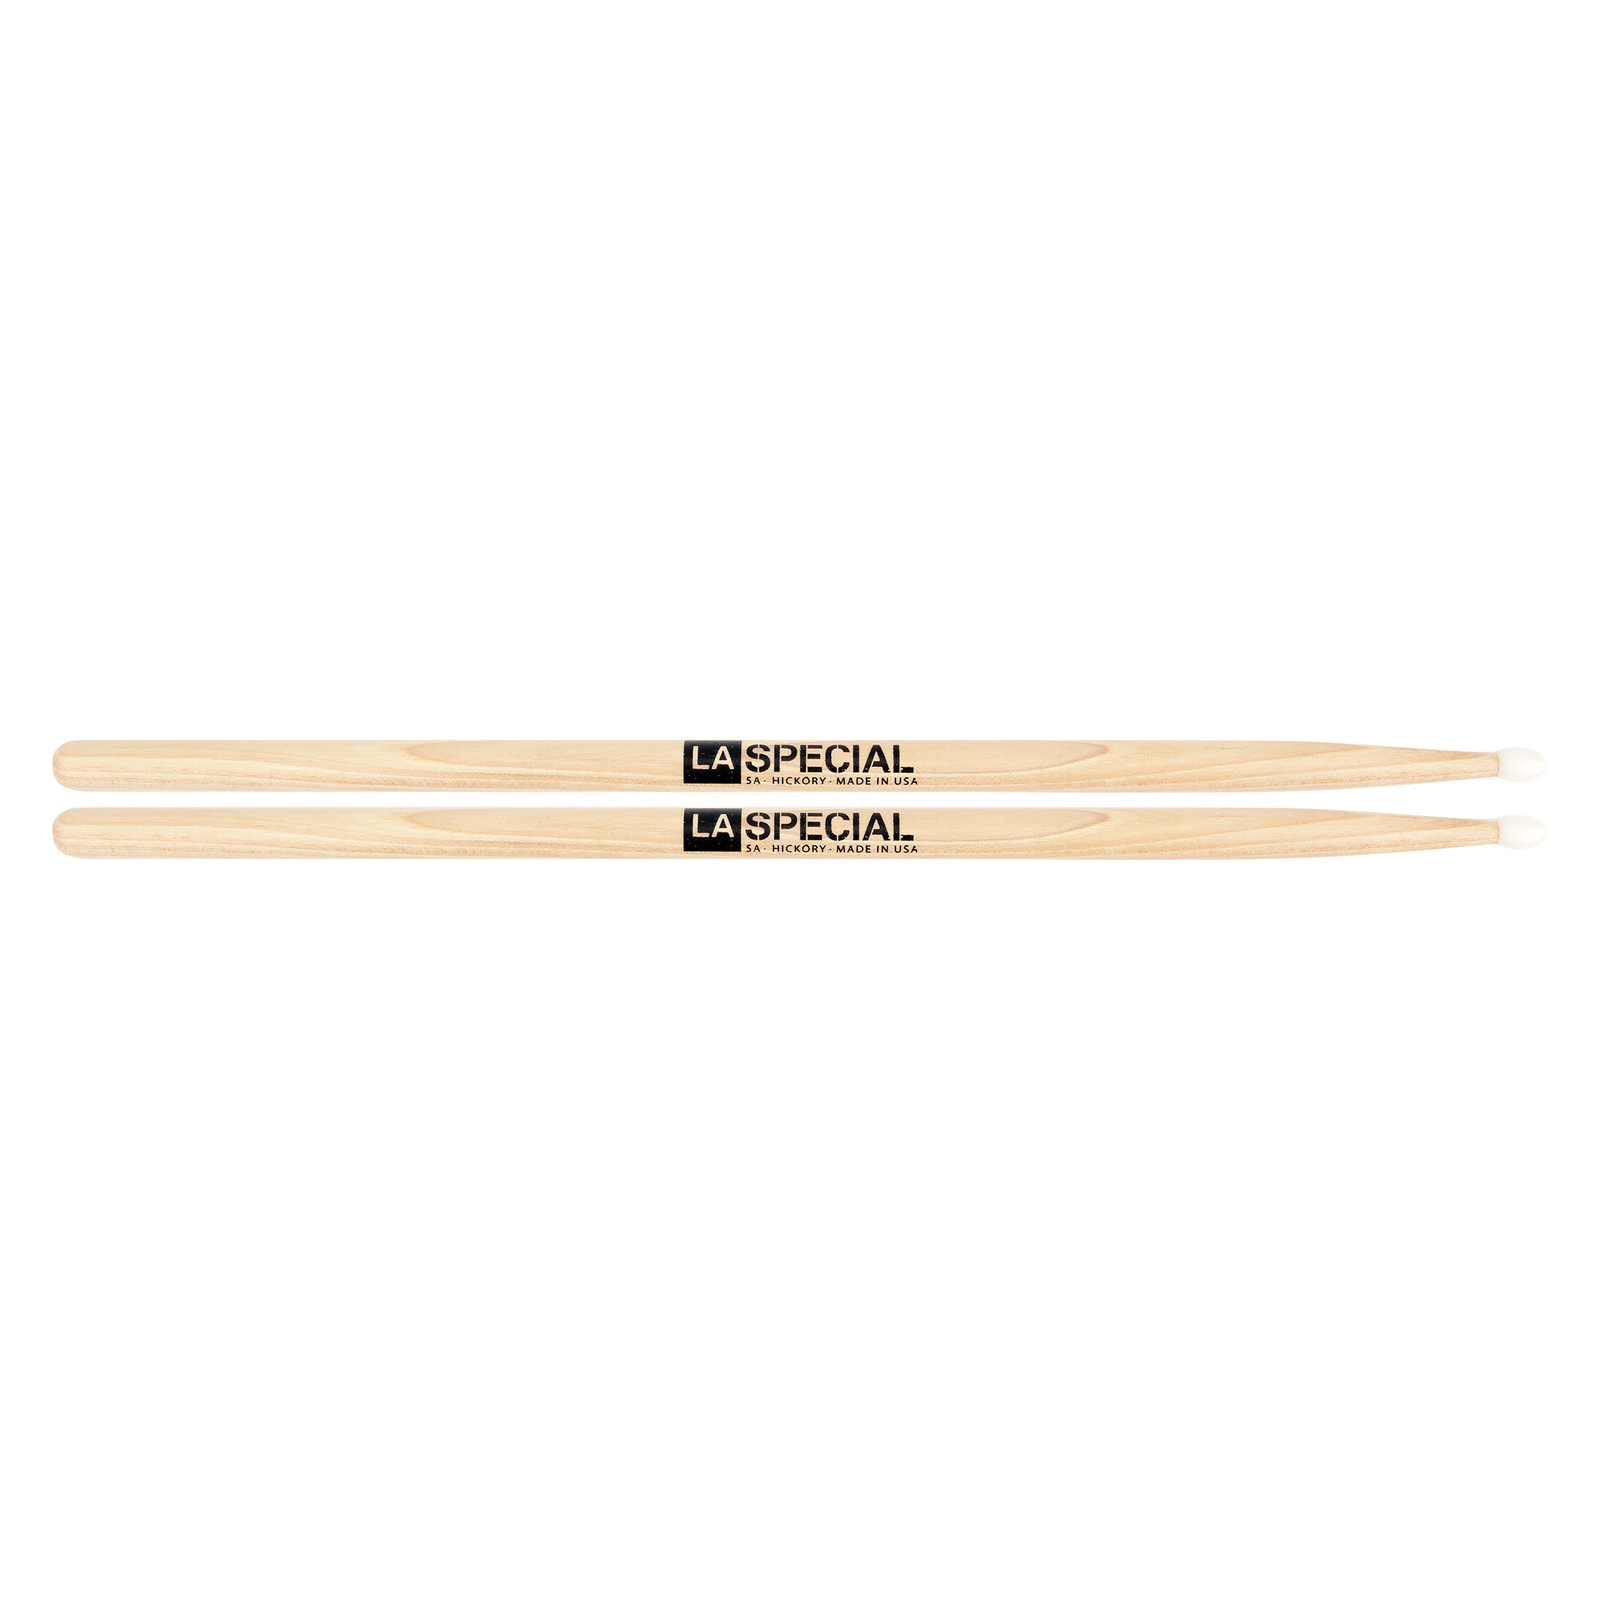 5B Wood Tip Drumsticks